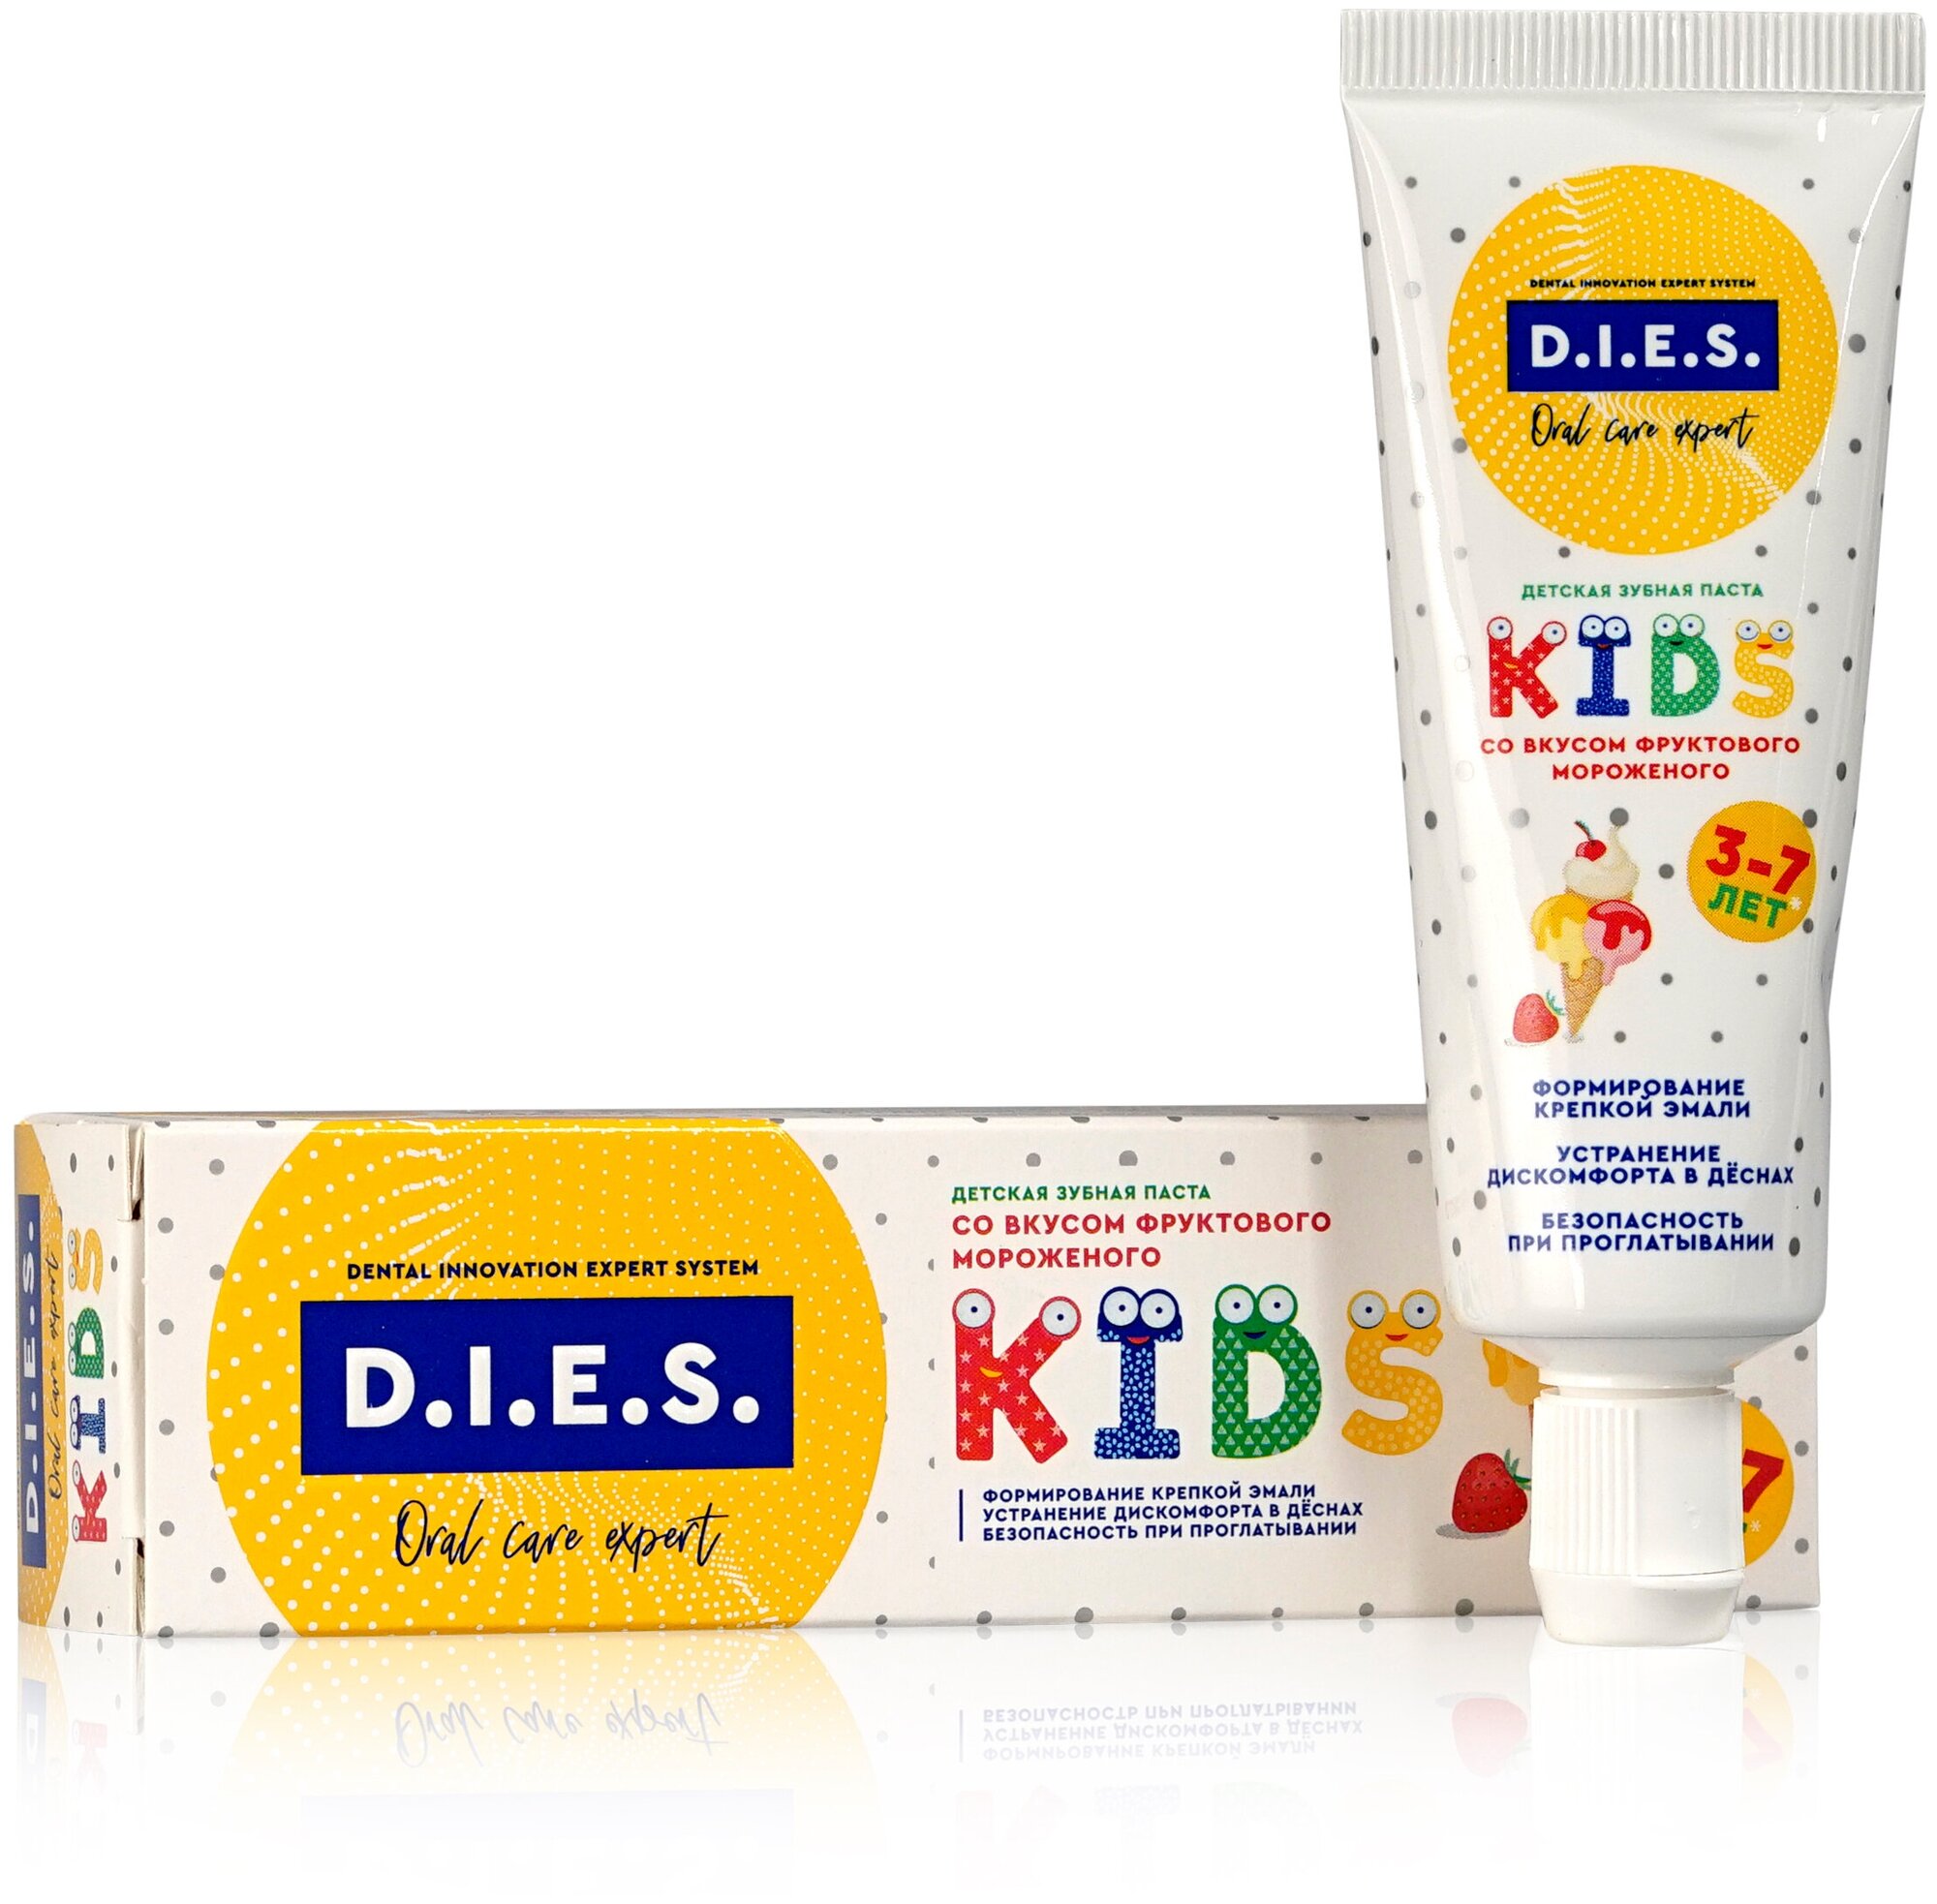 З/п D.I.E.S. Kids 45г Фруктовое мороженое 3-7 лет дет.